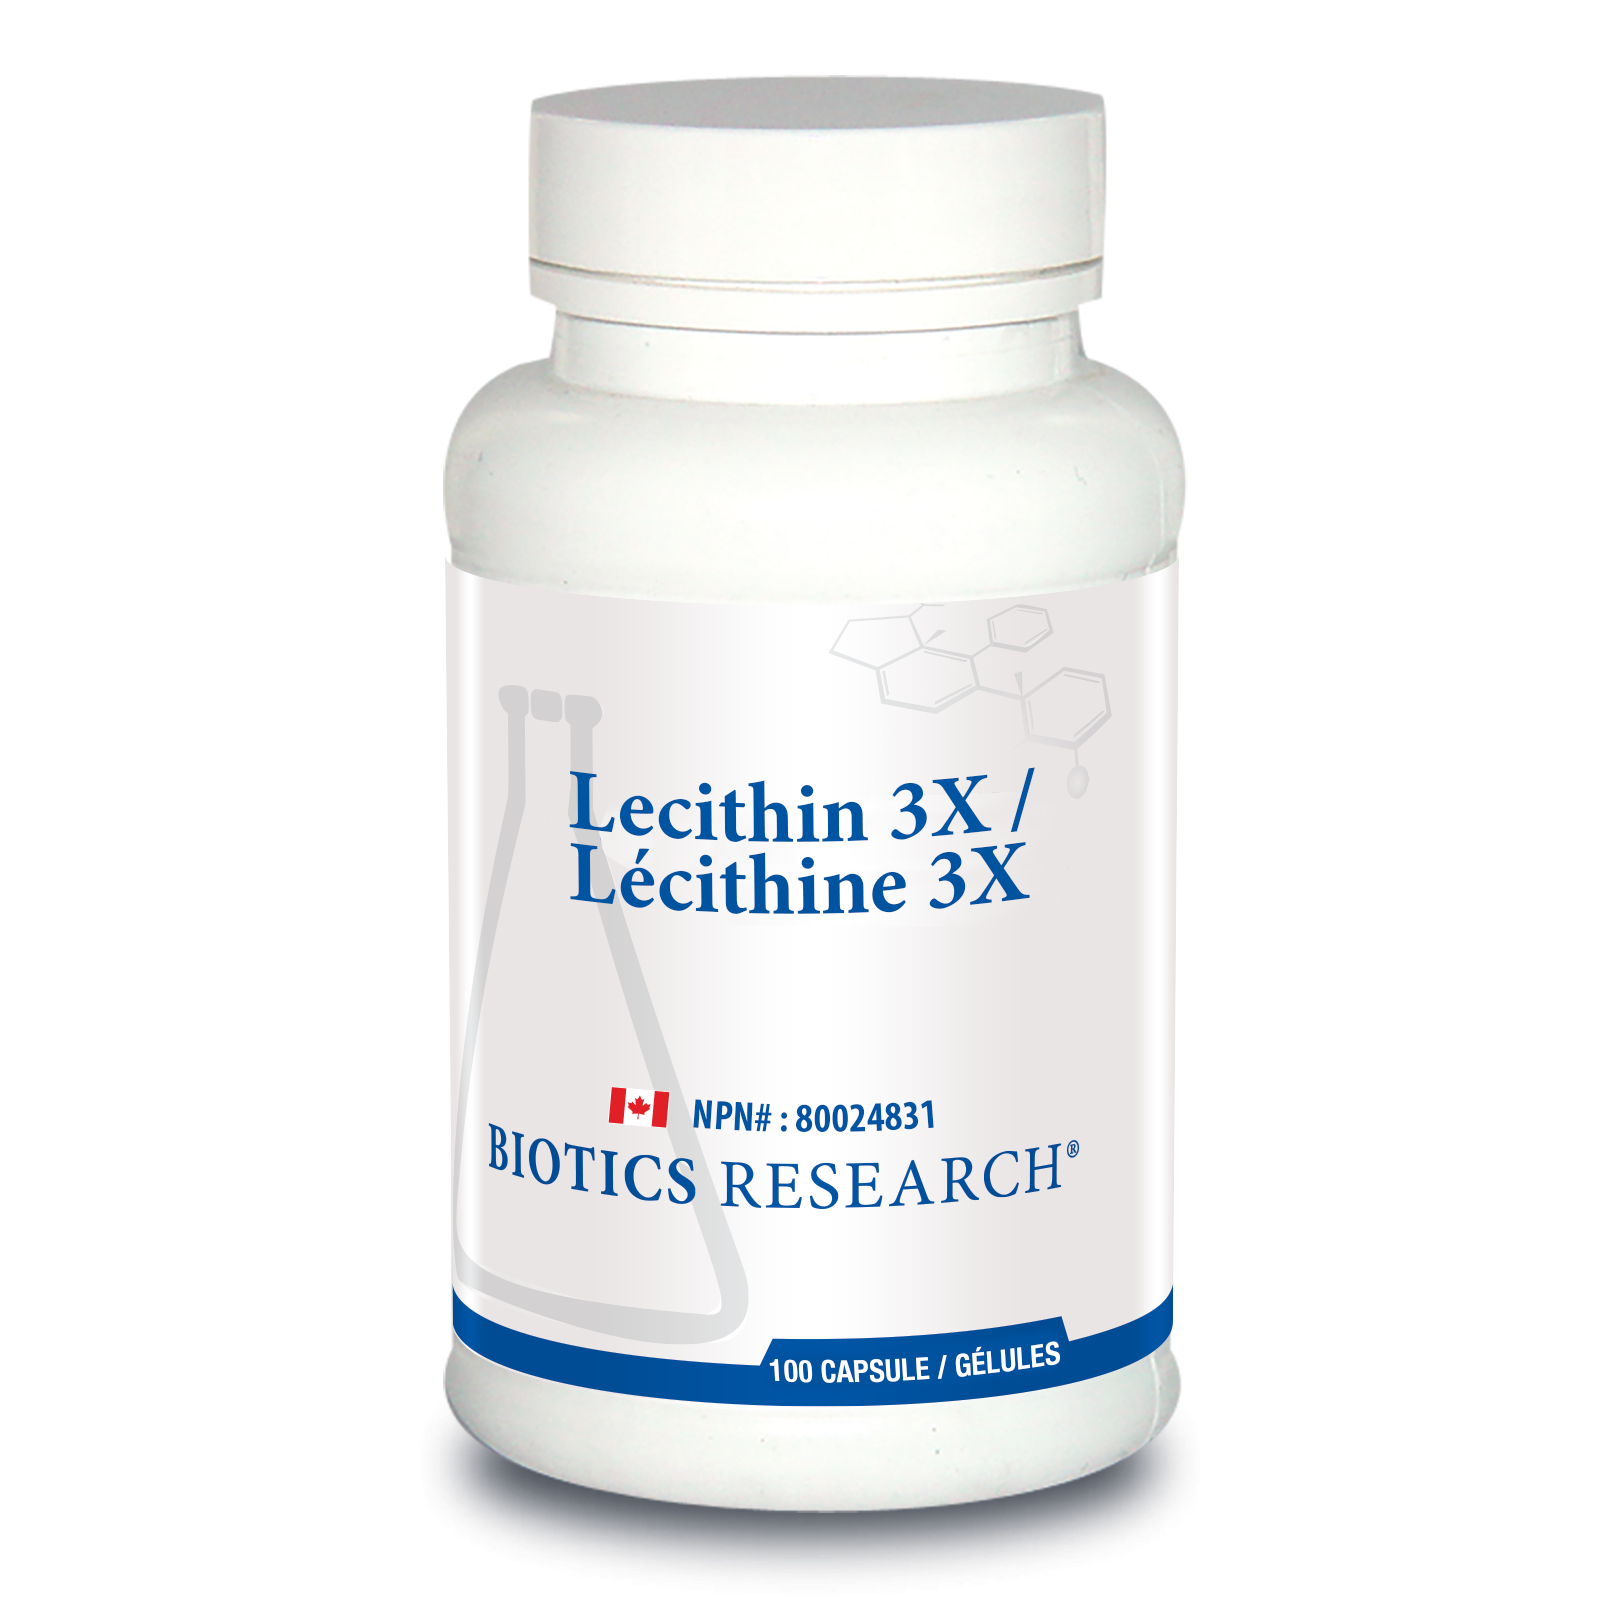 Lecithin 3X (Phosphatidylcholine)